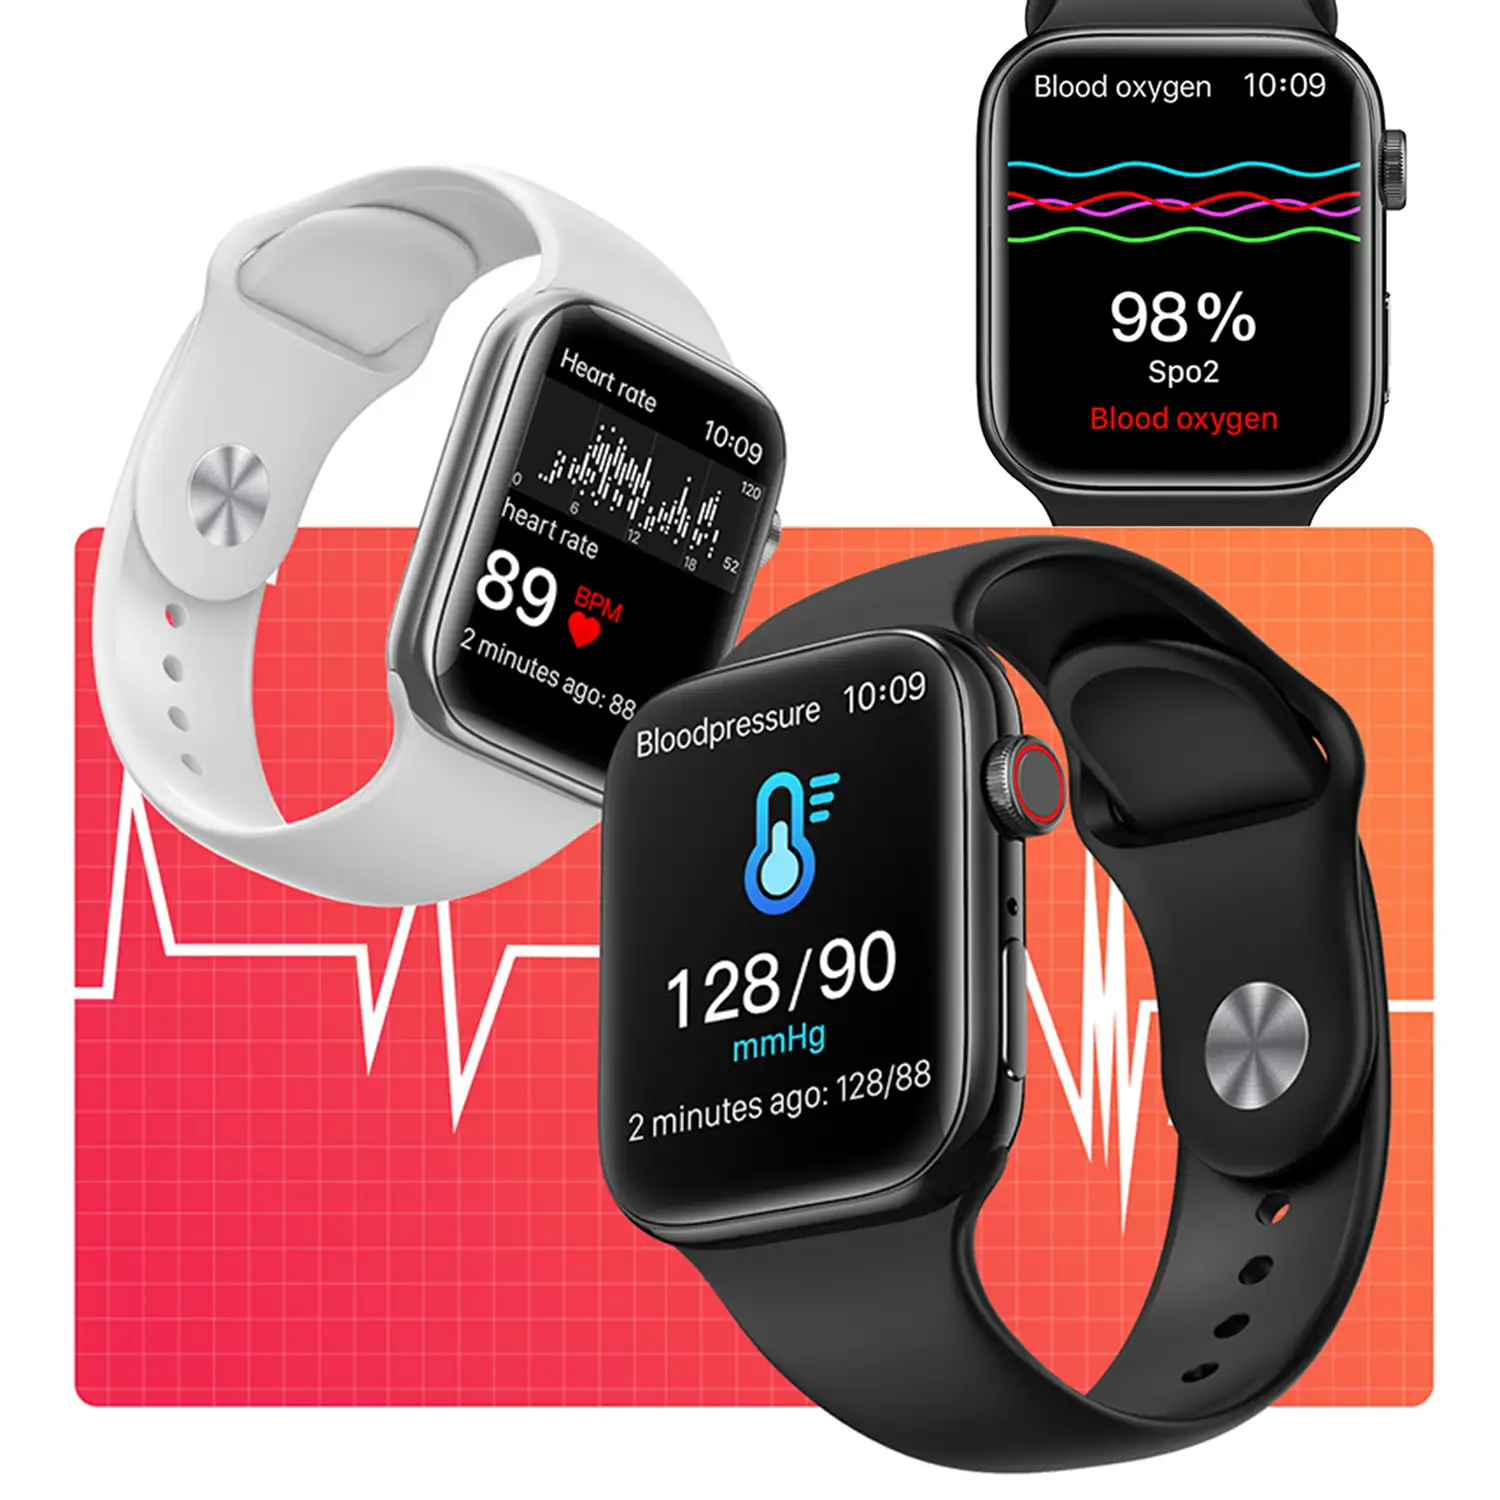 Smartwatch T900 Pro 8 con pantalla de 1,8 HR, monitor cardiaco y de O2 en sangre. Varios modos deportivos, notificaciones de apps.